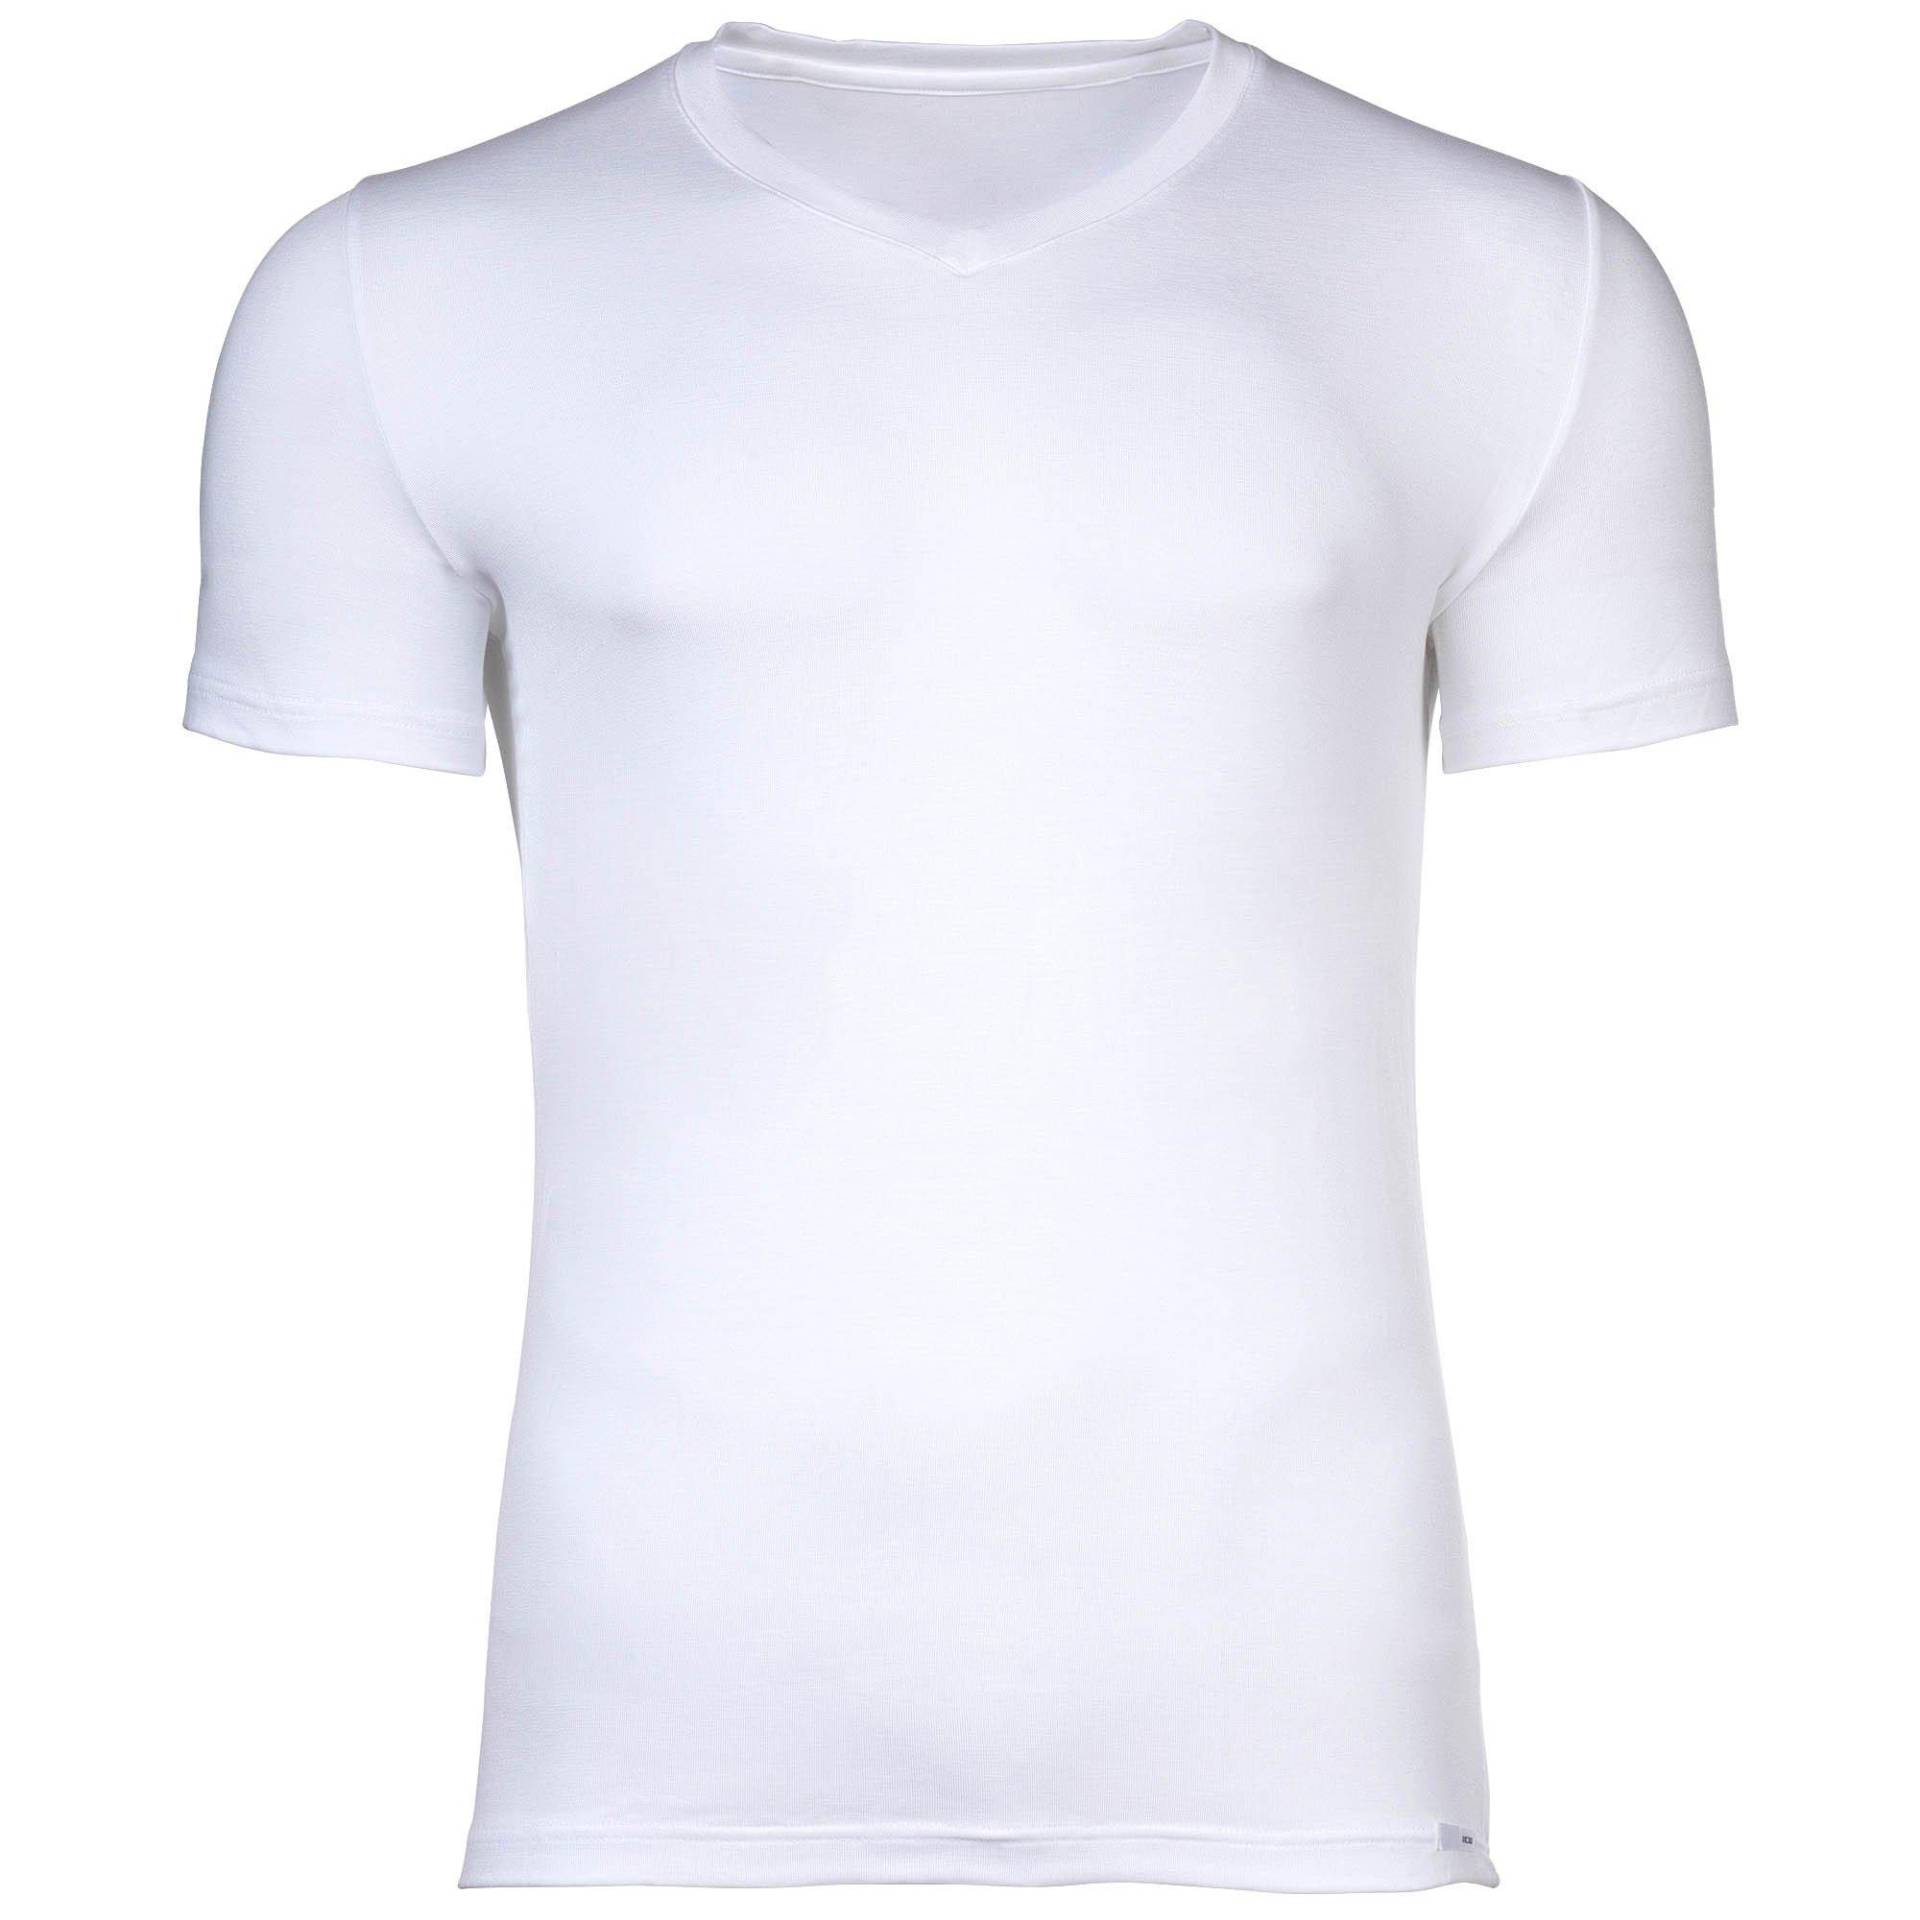 T-shirt Bequem Sitzend Damen Weiss XL von HOM